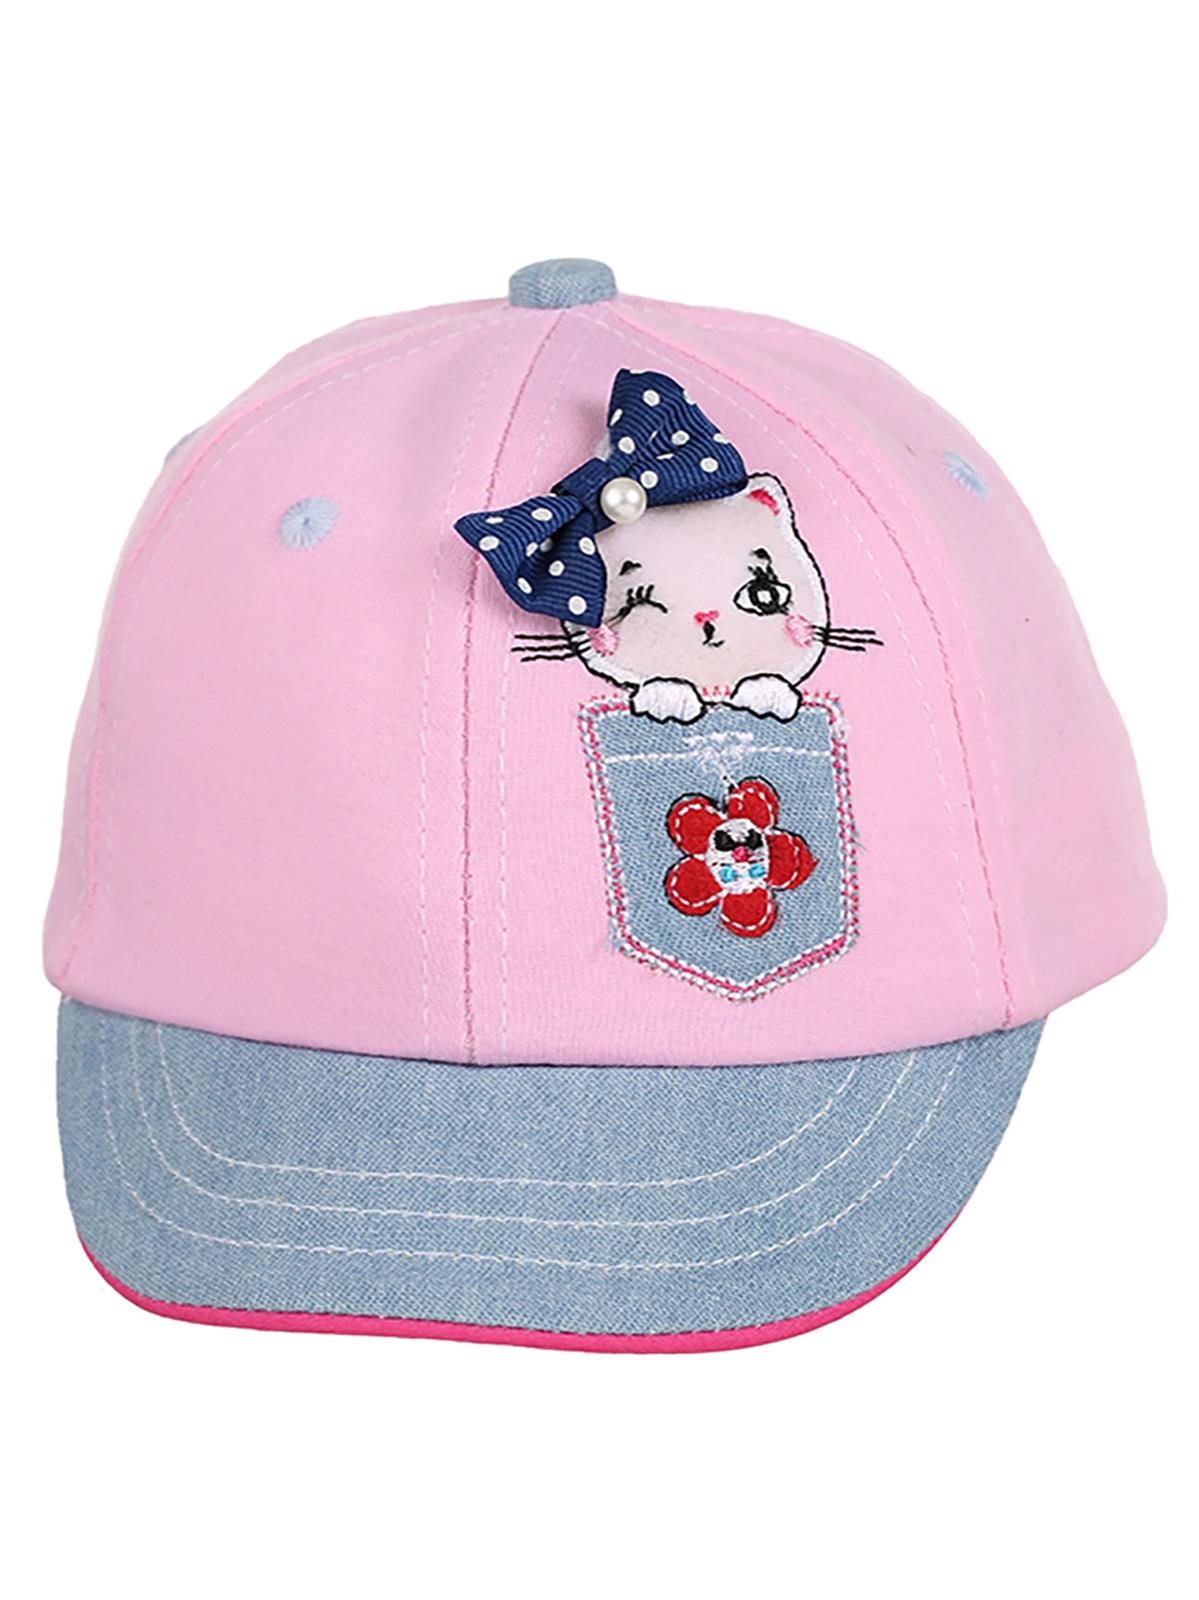 Kitti Kız Bebek Şapka 0-18 Ay Pembe